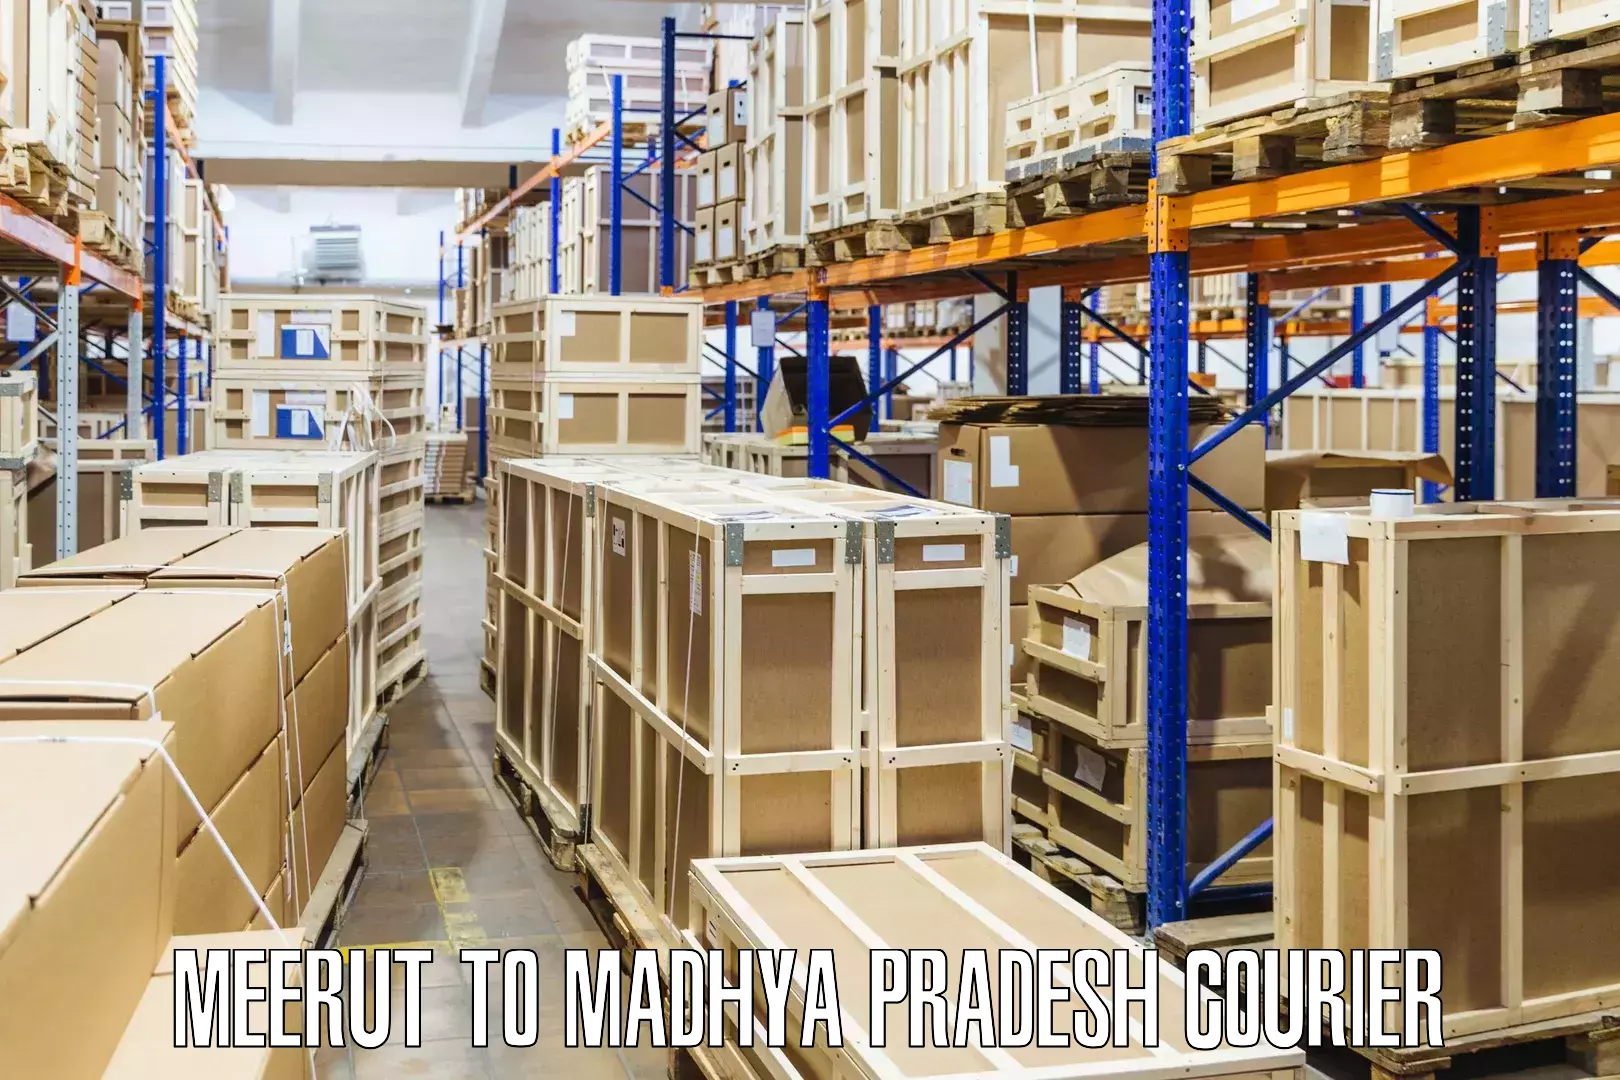 Courier app Meerut to Madhya Pradesh